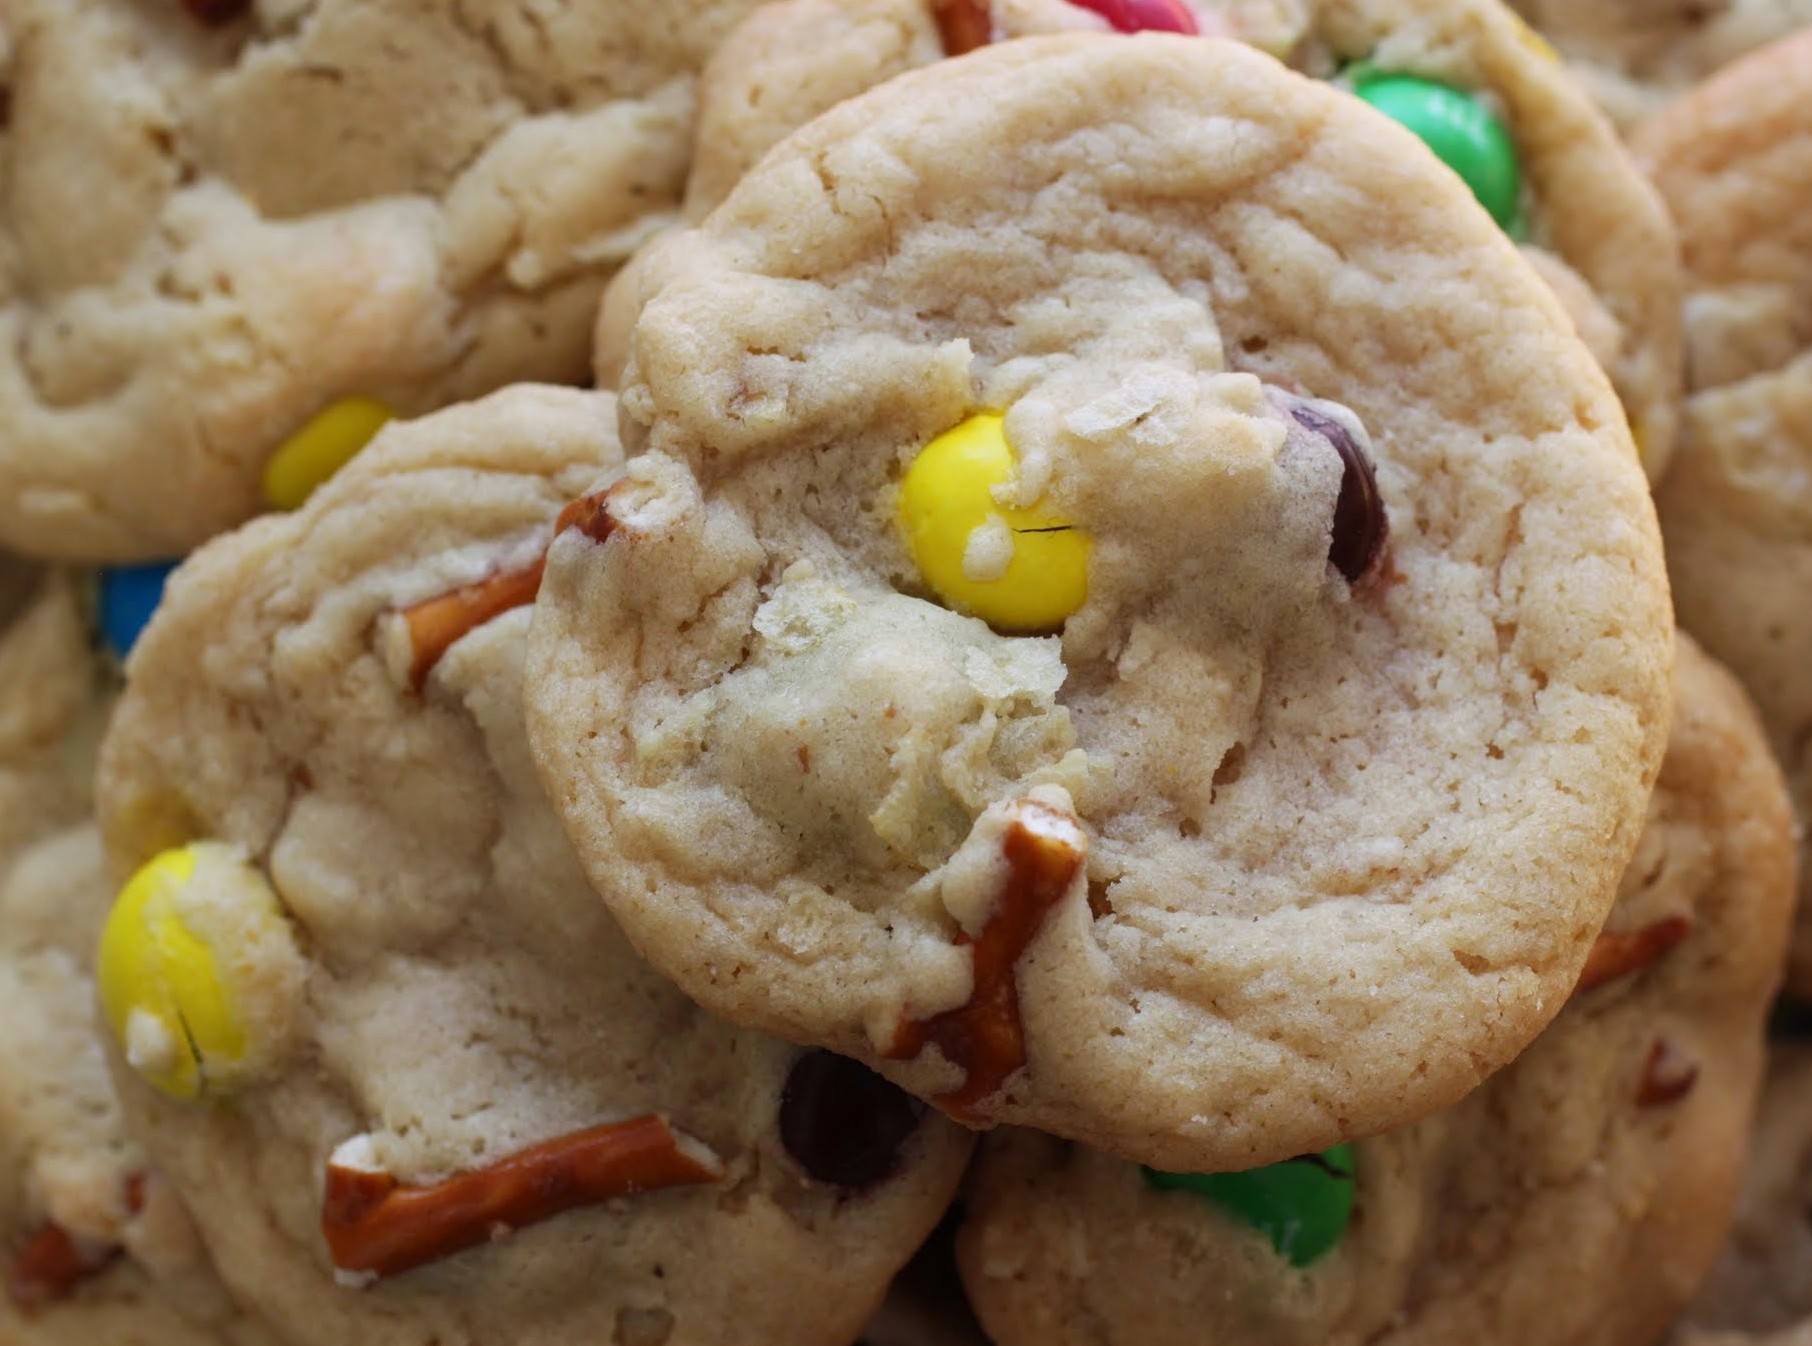 Sweet N’ Salty Cookies